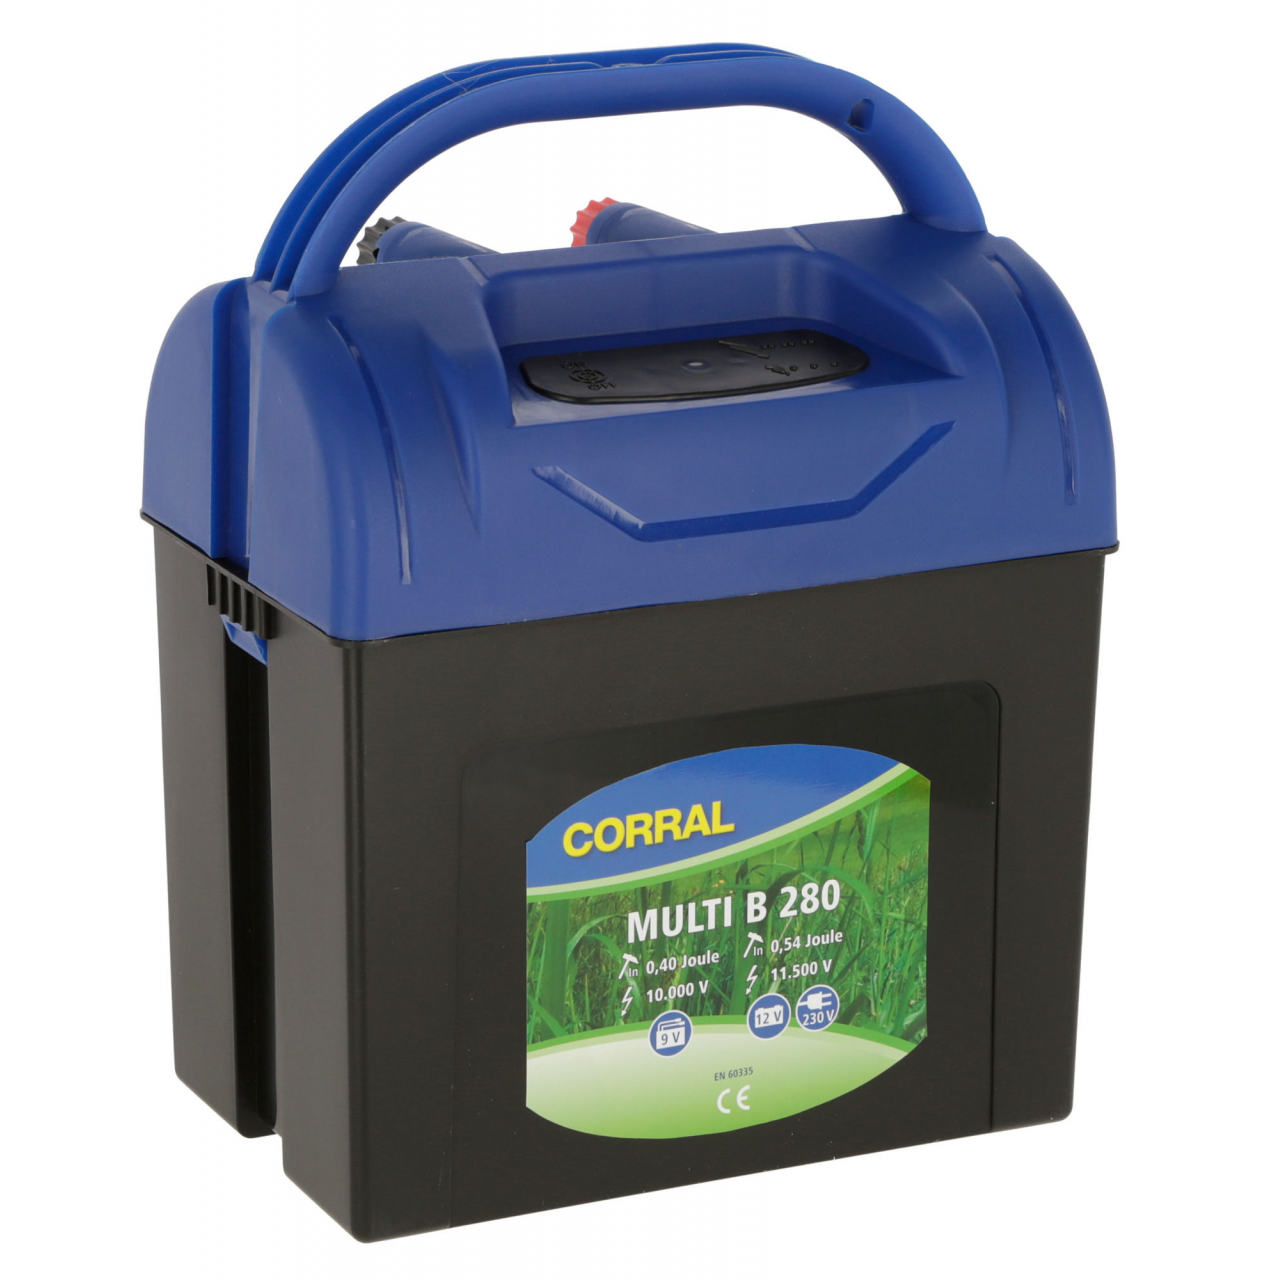 Corral Multi B 280 villanypásztor készülék - 9 V / 12 V / 230 V, 0,54 J